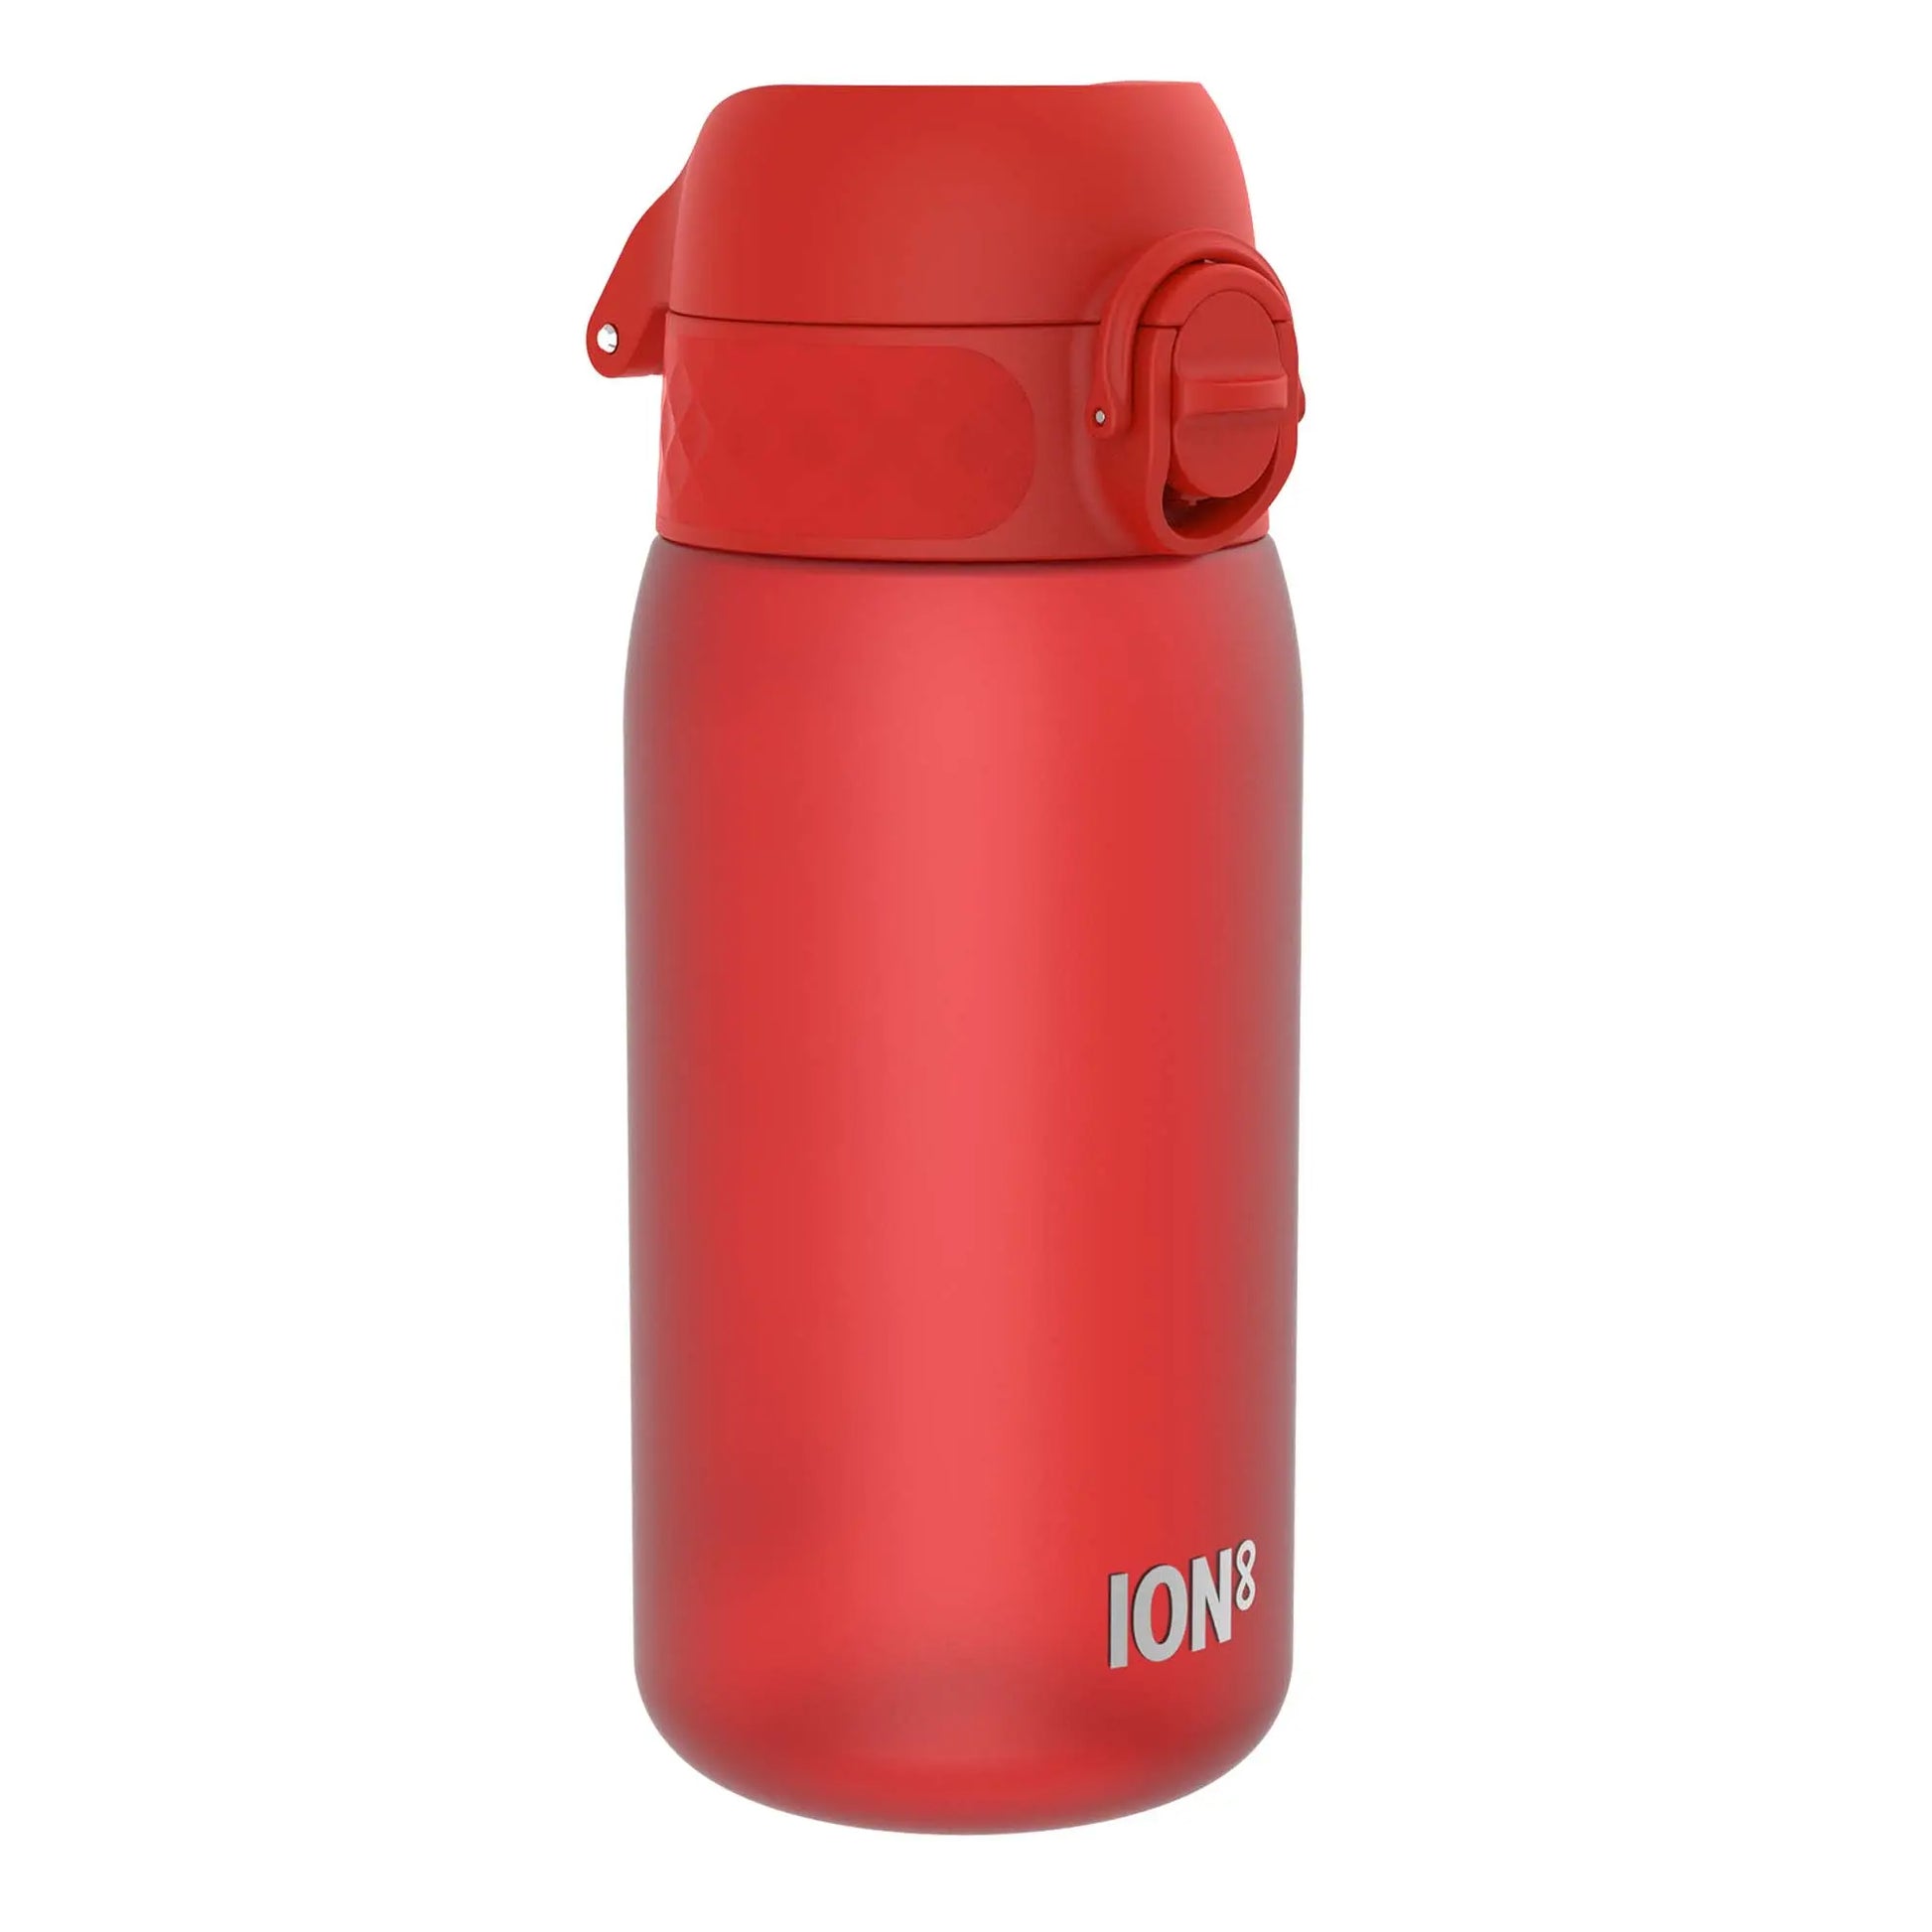 https://www.ion8.co.uk/cdn/shop/files/Leak-Proof-Kids-Water-Bottle_-Recyclon_-Red_-350ml-_12oz_-Ion8-54710783.jpg?v=1703122485&width=1946